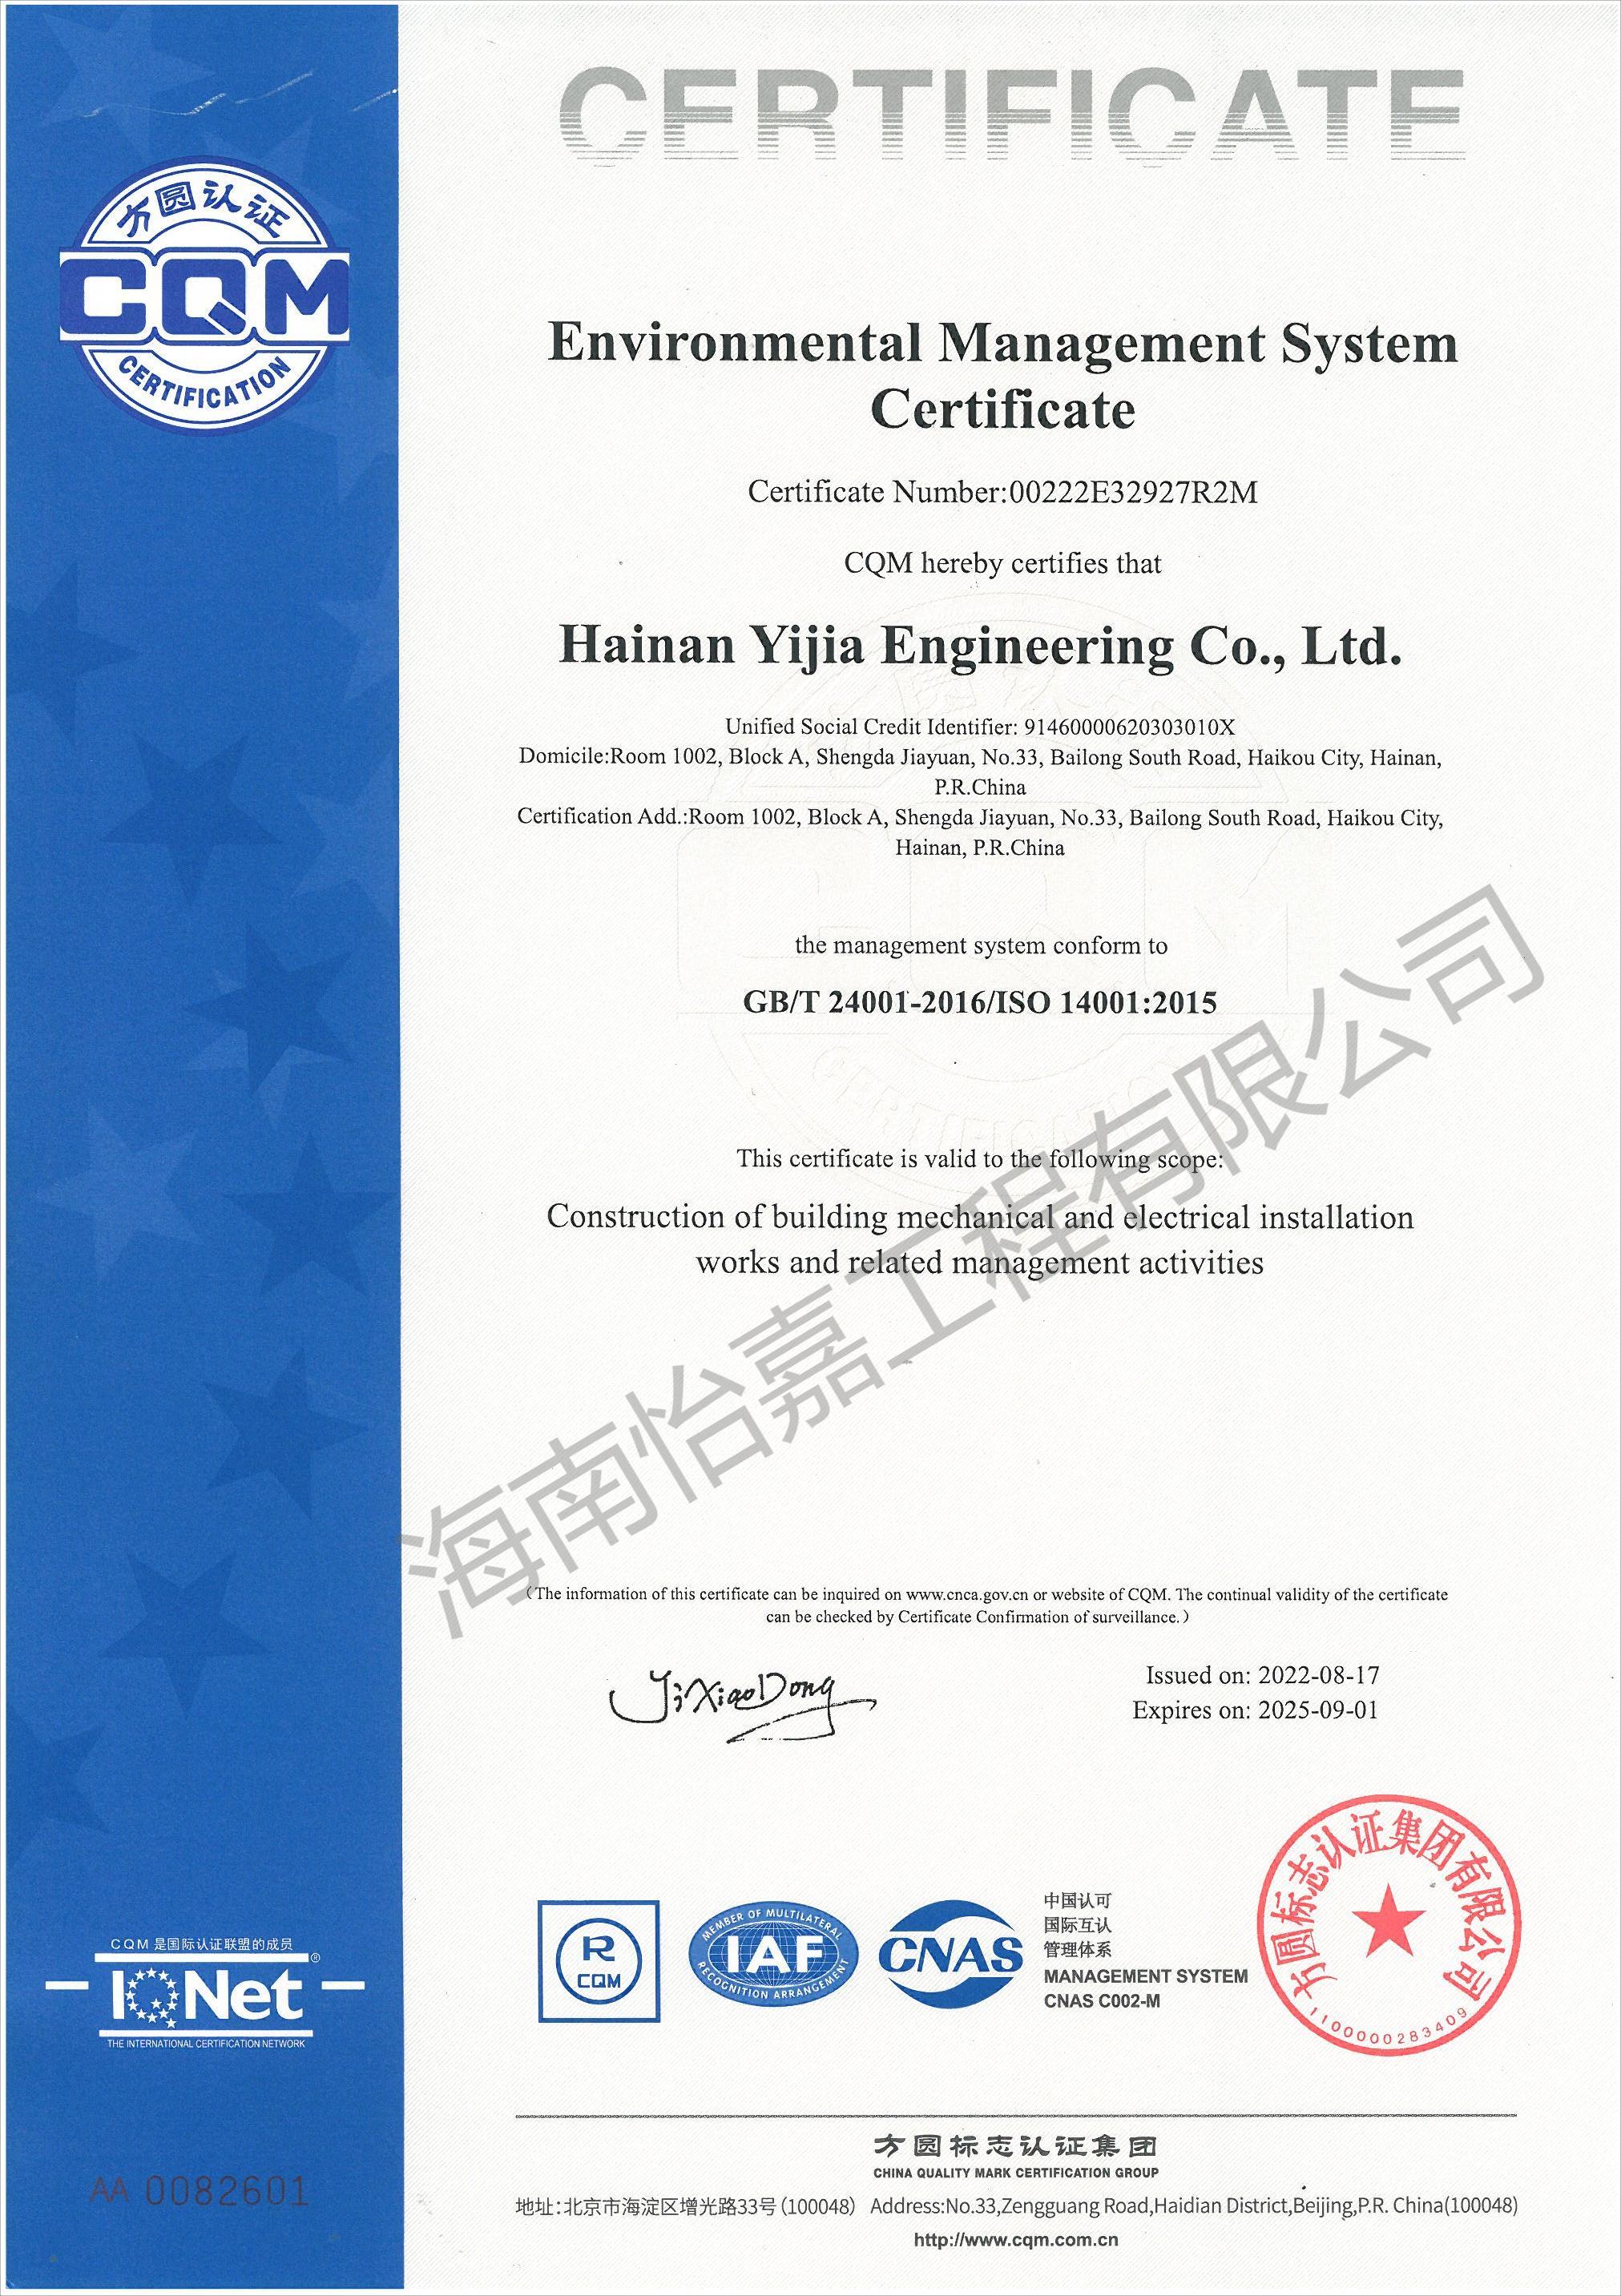 环境管理体系认证证书英文版_00(1).jpg